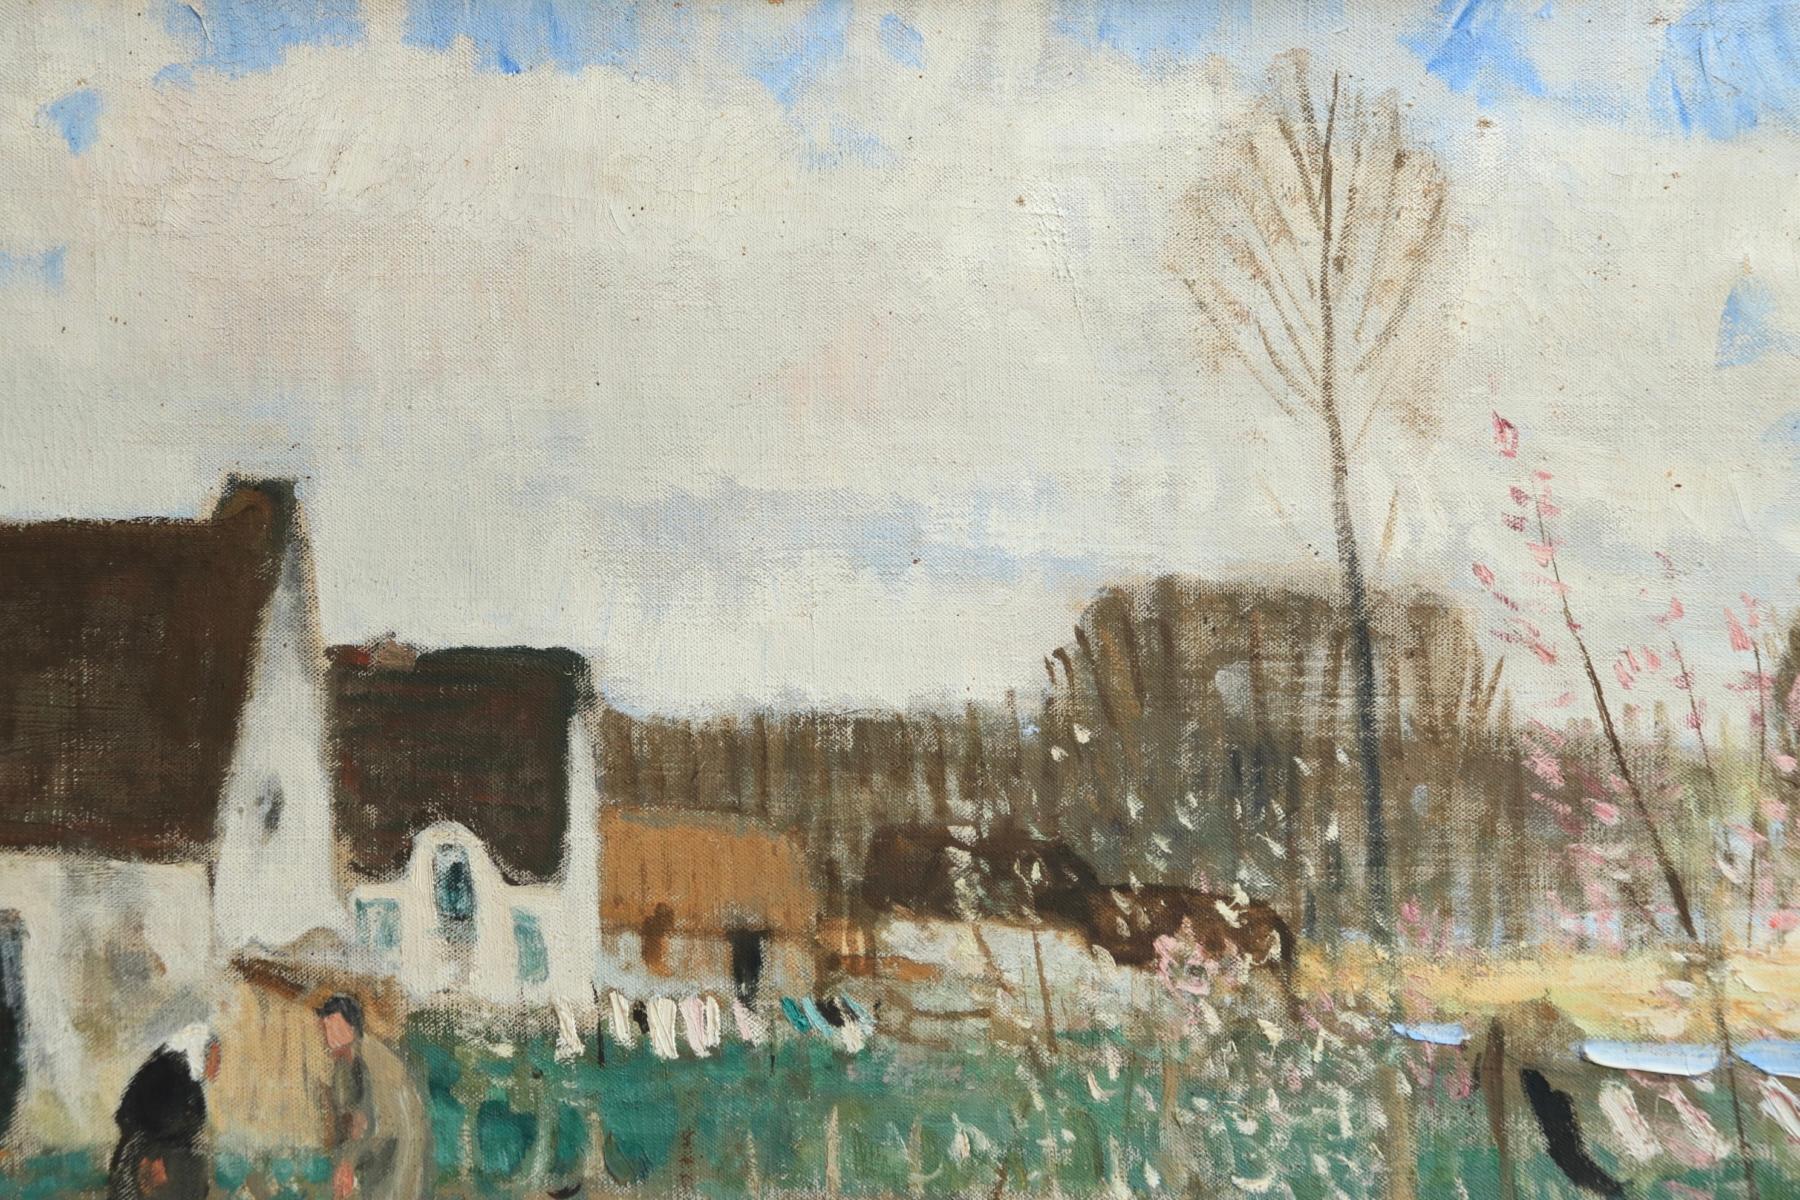 Lavandieres - L'Ile de Fedrun - Post Impressionist Oil, Landscape - P E Montezin - Post-Impressionist Painting by Pierre Eugene Montezin